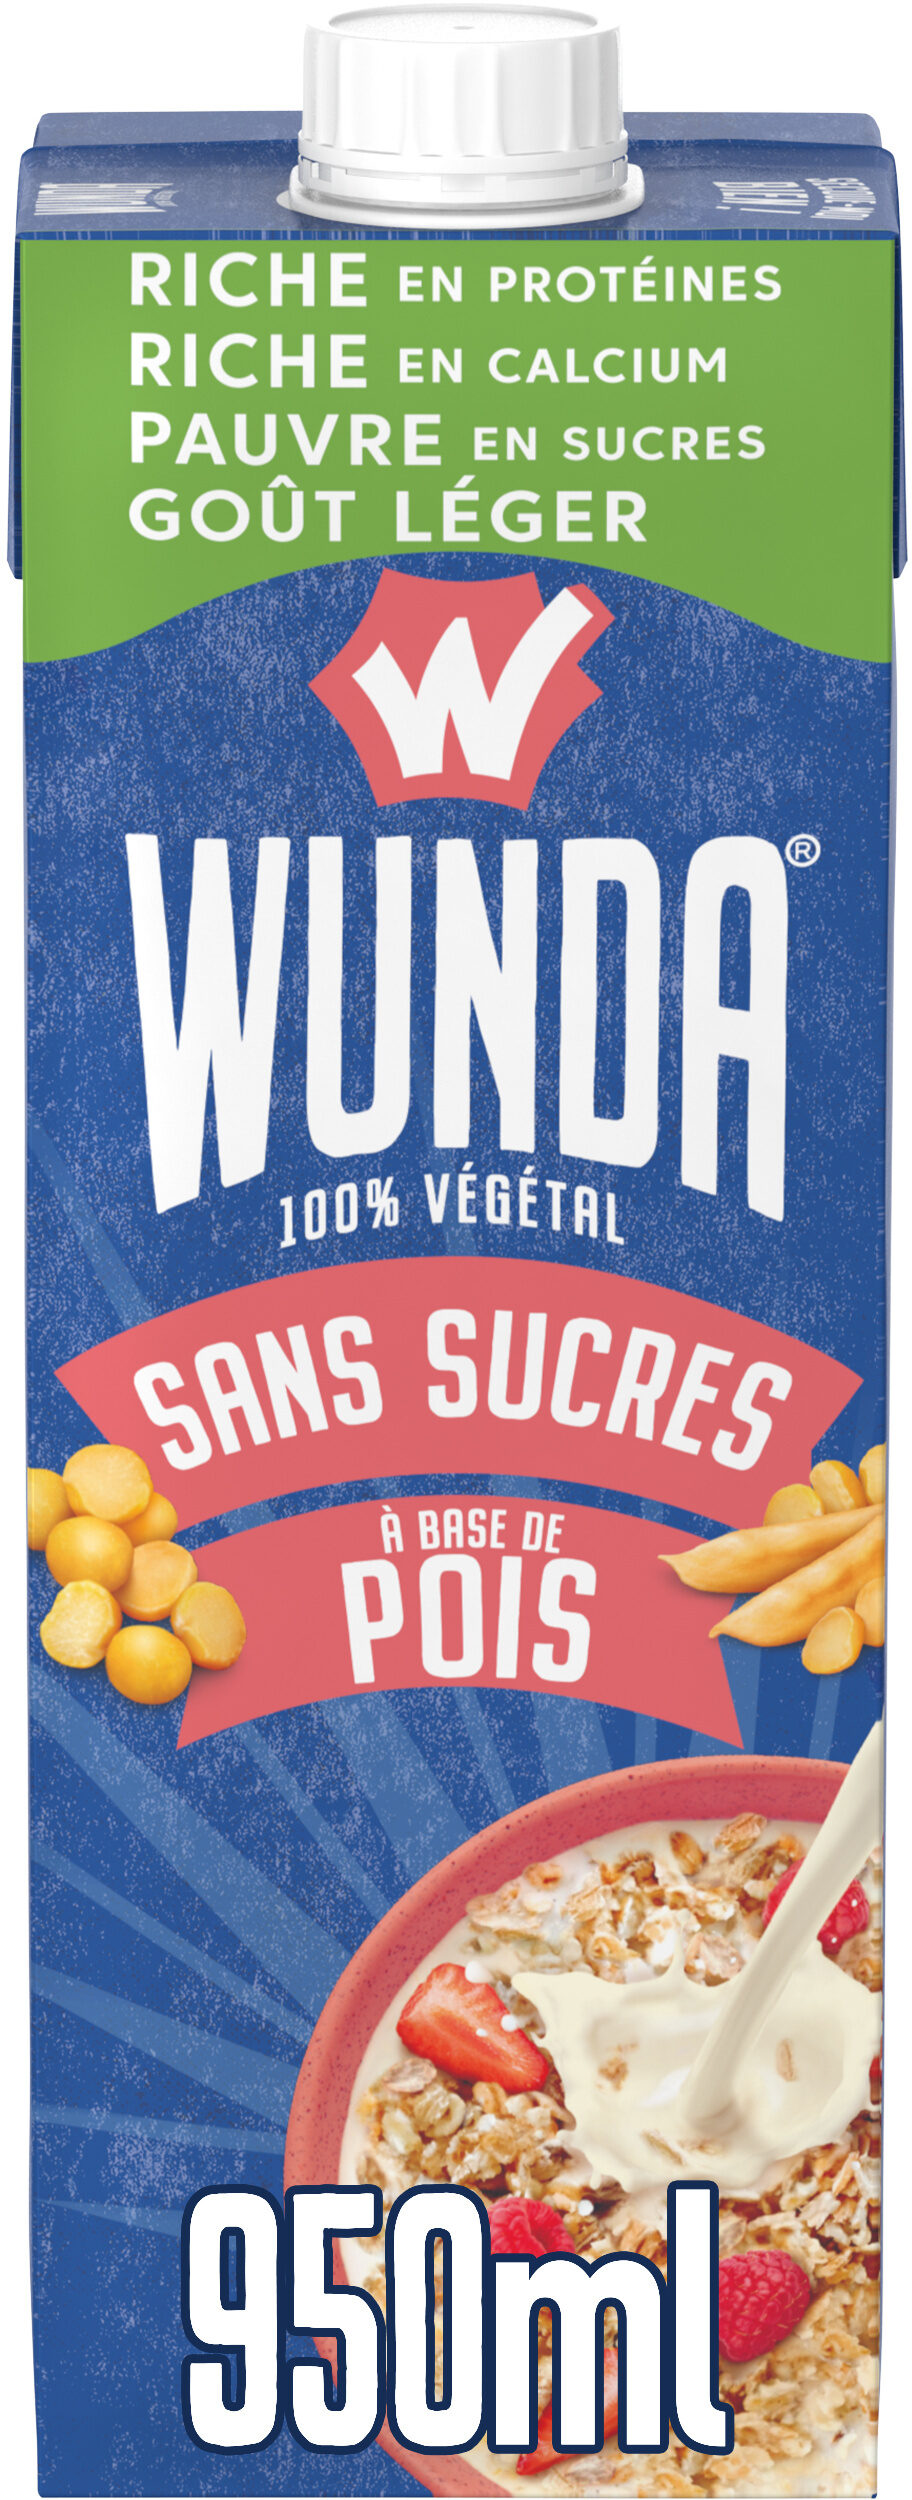 WUNDA Sans sucres à base de pois - Prodotto - fr